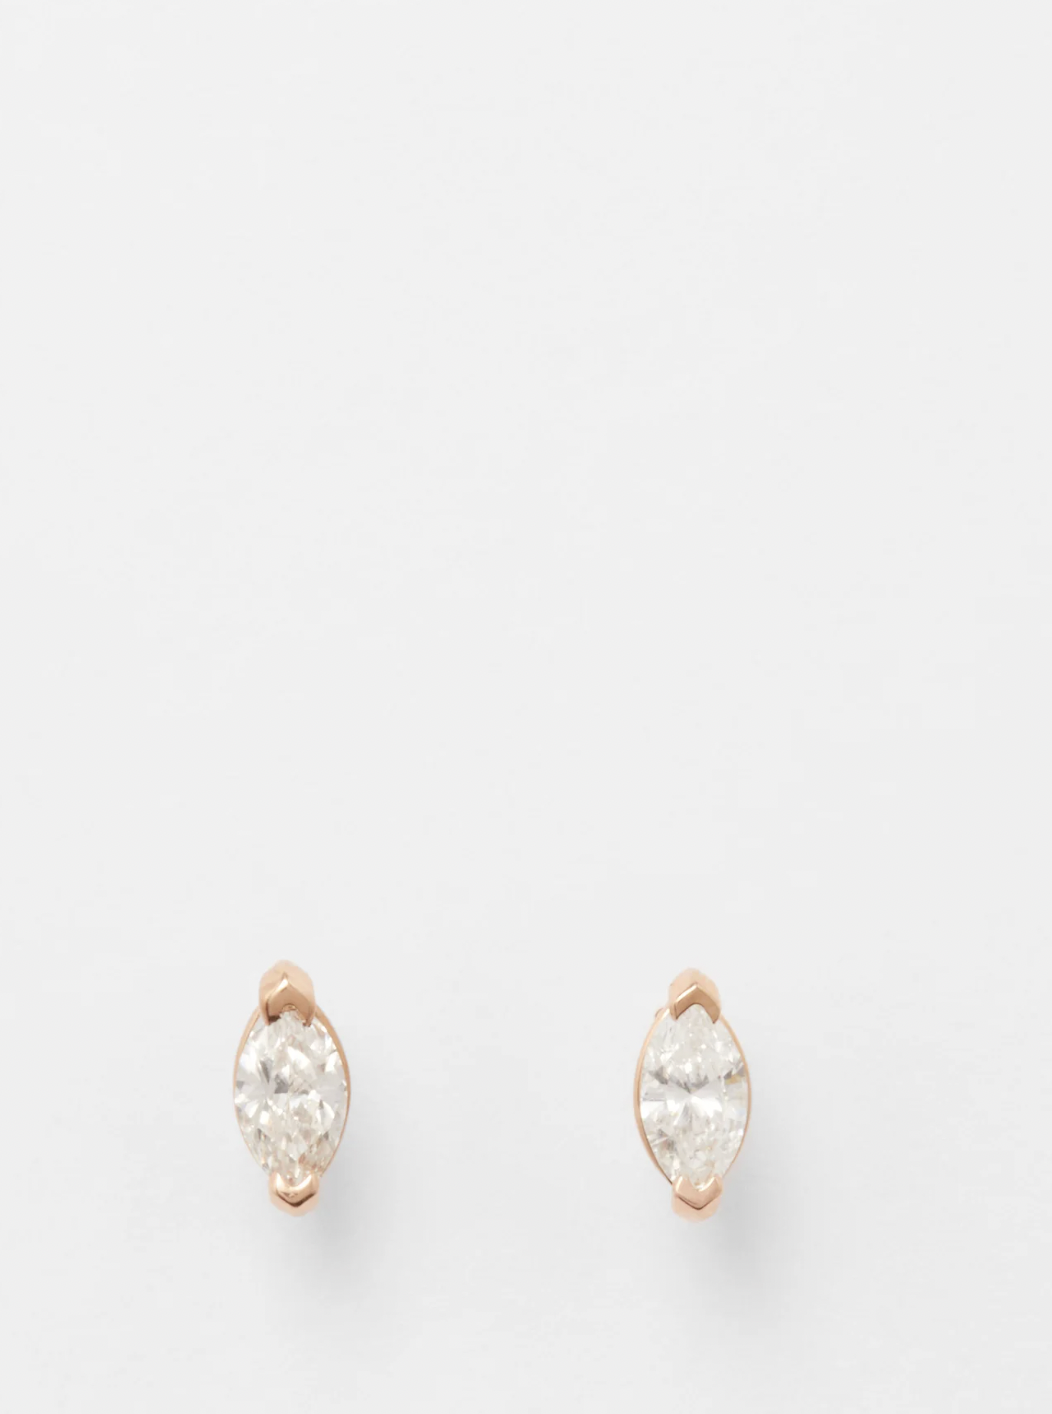 diamond earrings wedding